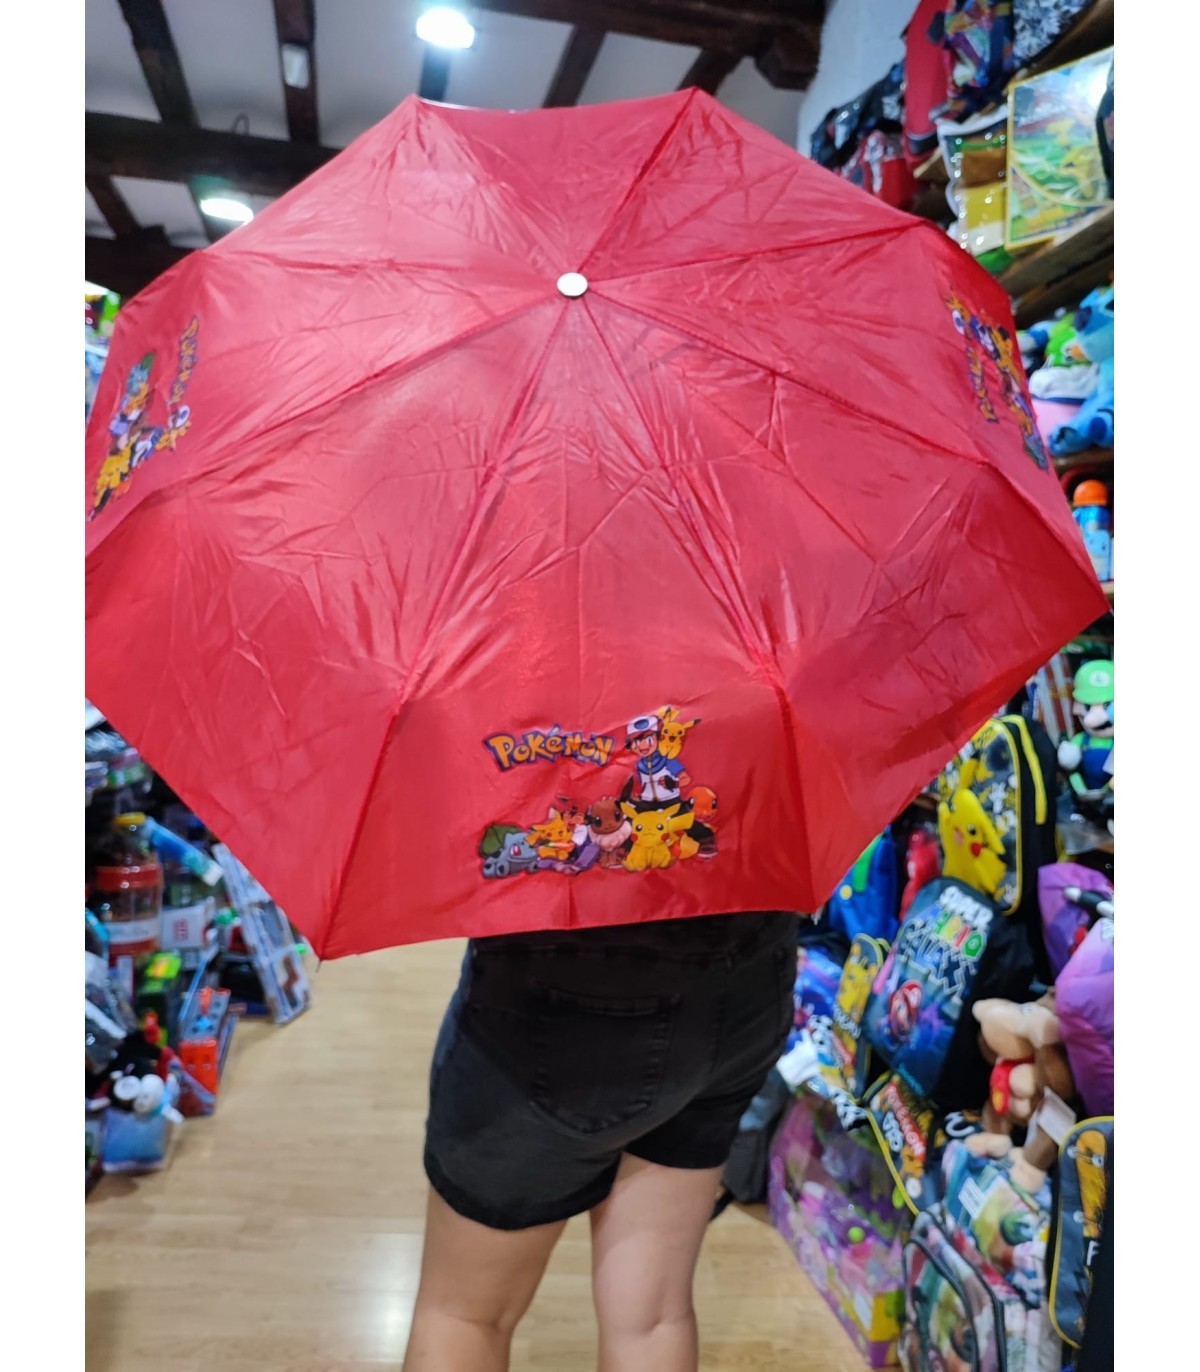 Compra ya tu paraguas pokemon plegable de adulto por solo 13,64 €